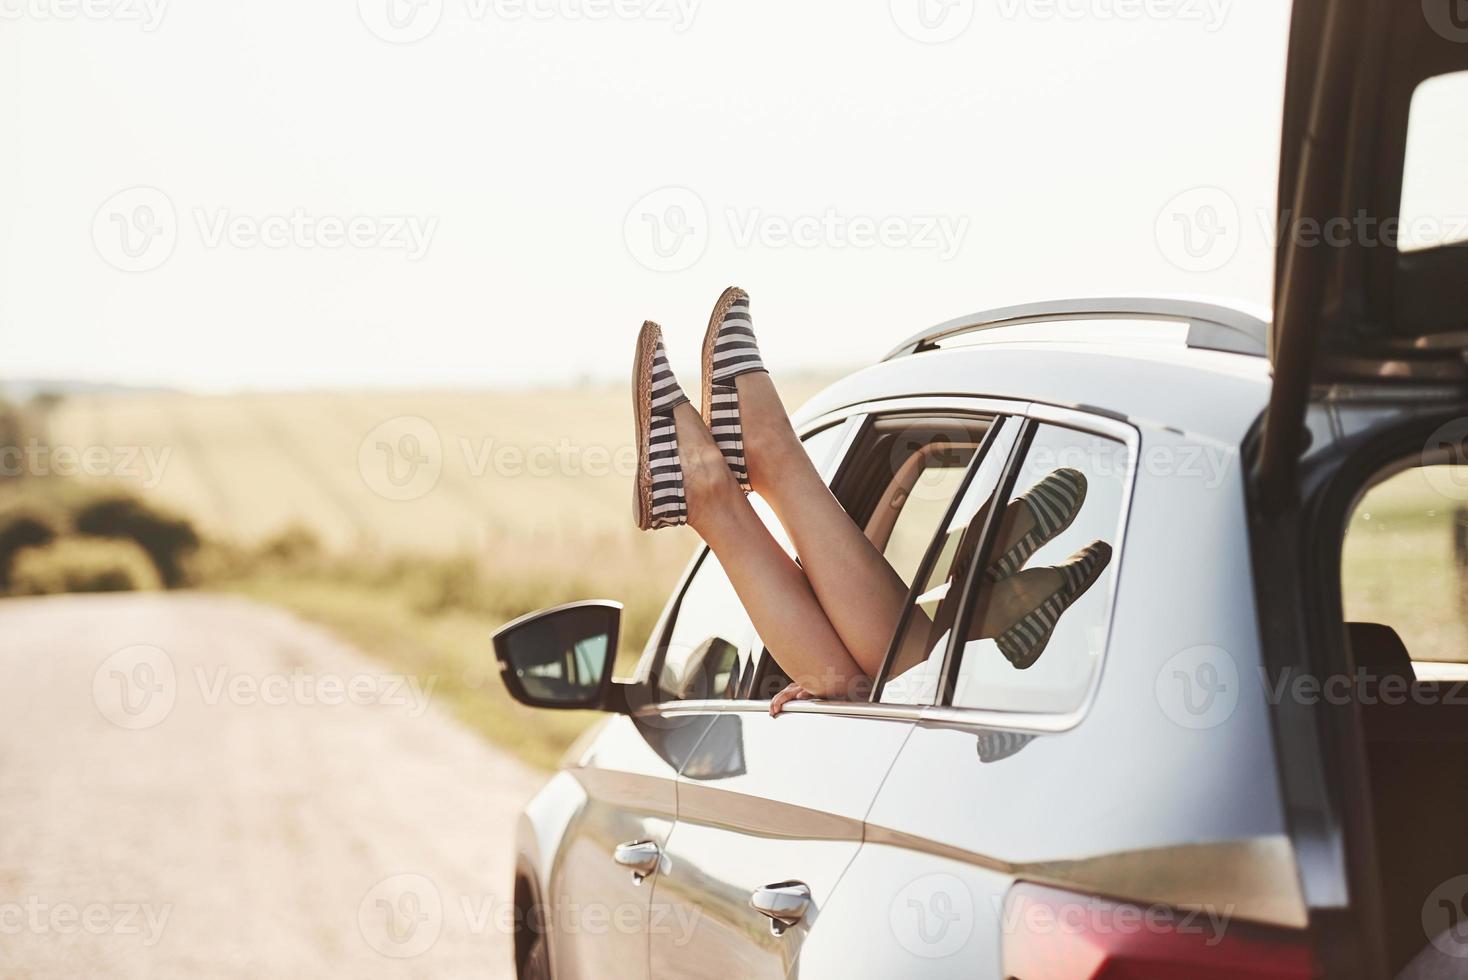 em chinelos listrados preto e branco. menina põe as pernas para fora na janela do automóvel na zona rural foto